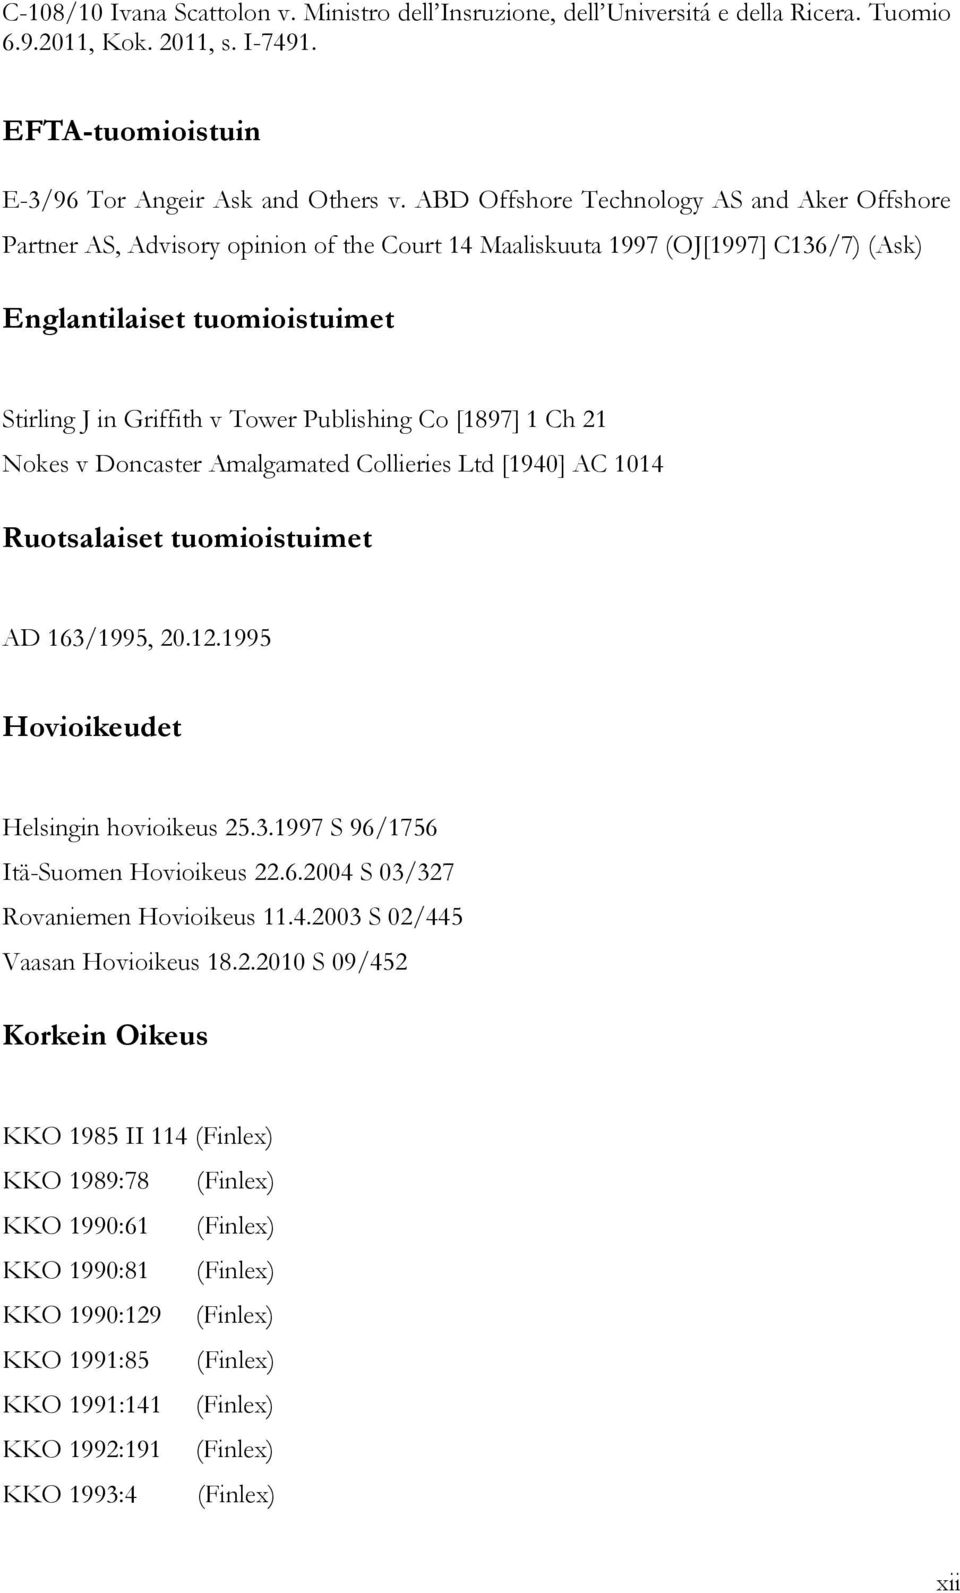 Publishing Co [1897] 1 Ch 21 Nokes v Doncaster Amalgamated Collieries Ltd [1940] AC 1014 Ruotsalaiset tuomioistuimet AD 163/1995, 20.12.1995 Hovioikeudet Helsingin hovioikeus 25.3.1997 S 96/1756 Itä-Suomen Hovioikeus 22.